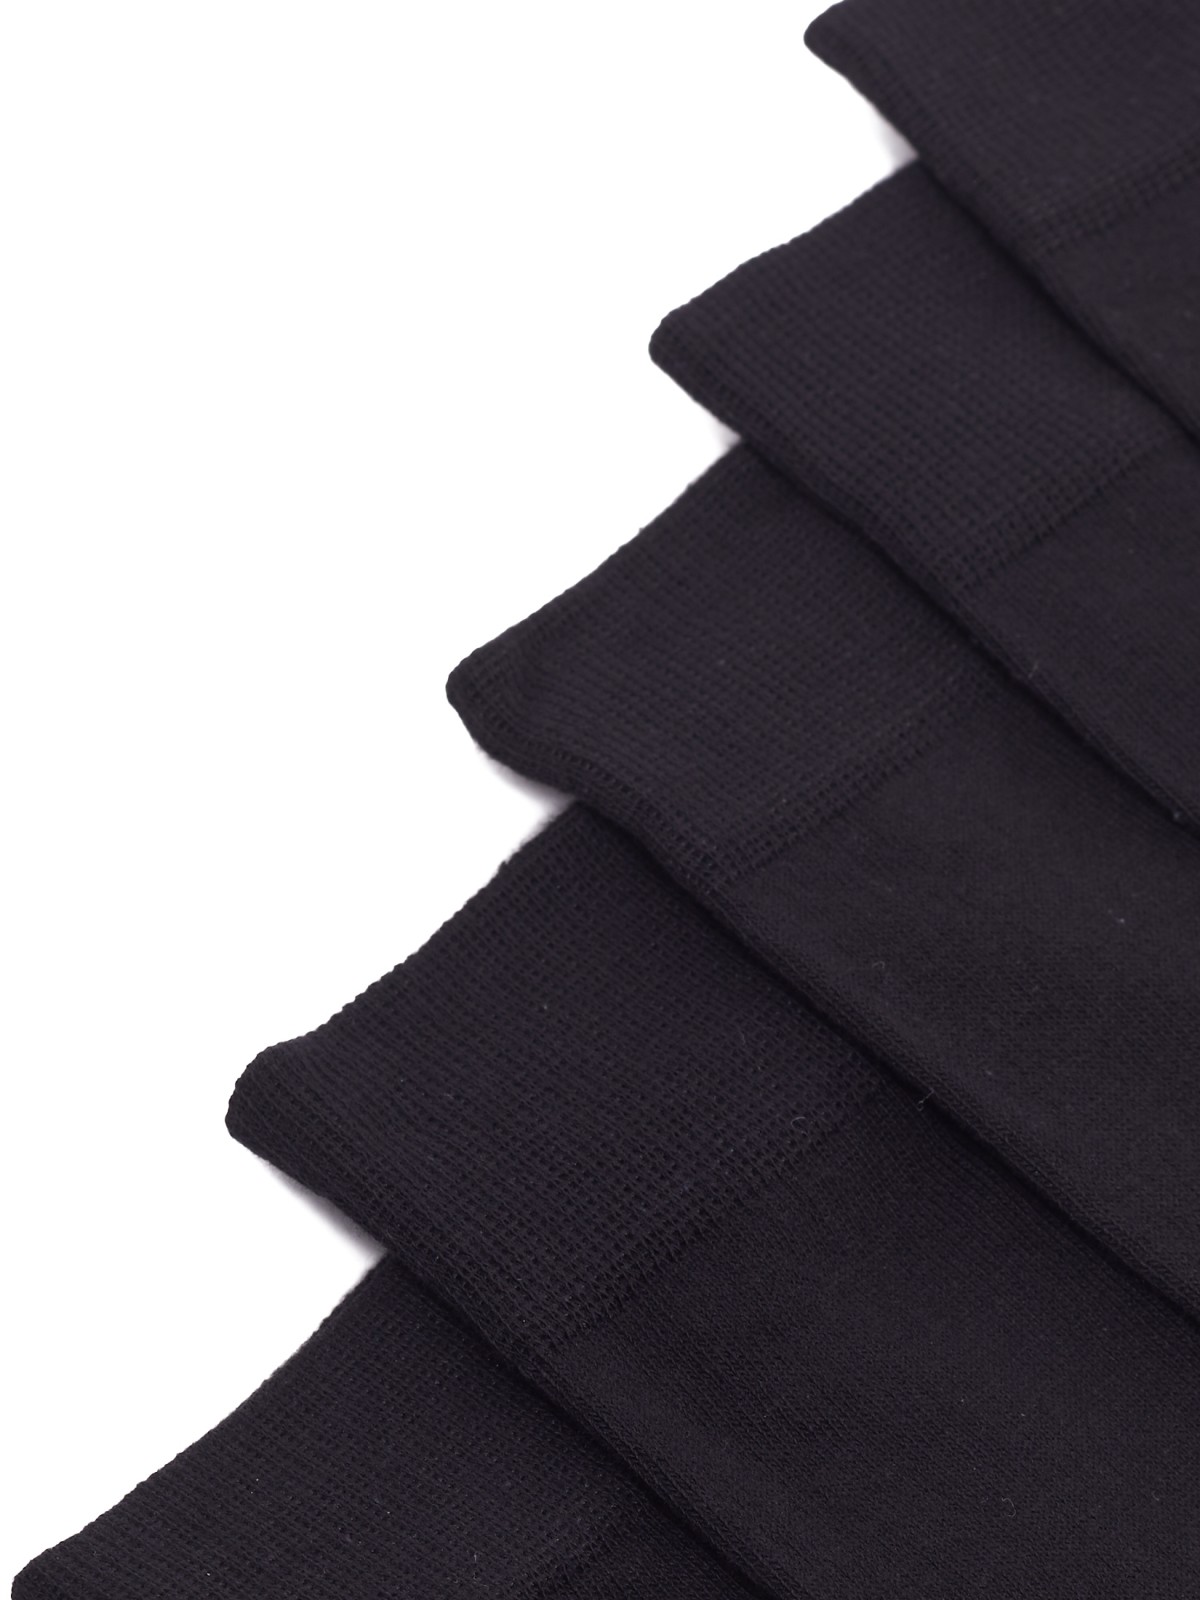 Набор носков (3 пары в комплекте) zolla 01211998J255, цвет черный, размер 25-27 - фото 3